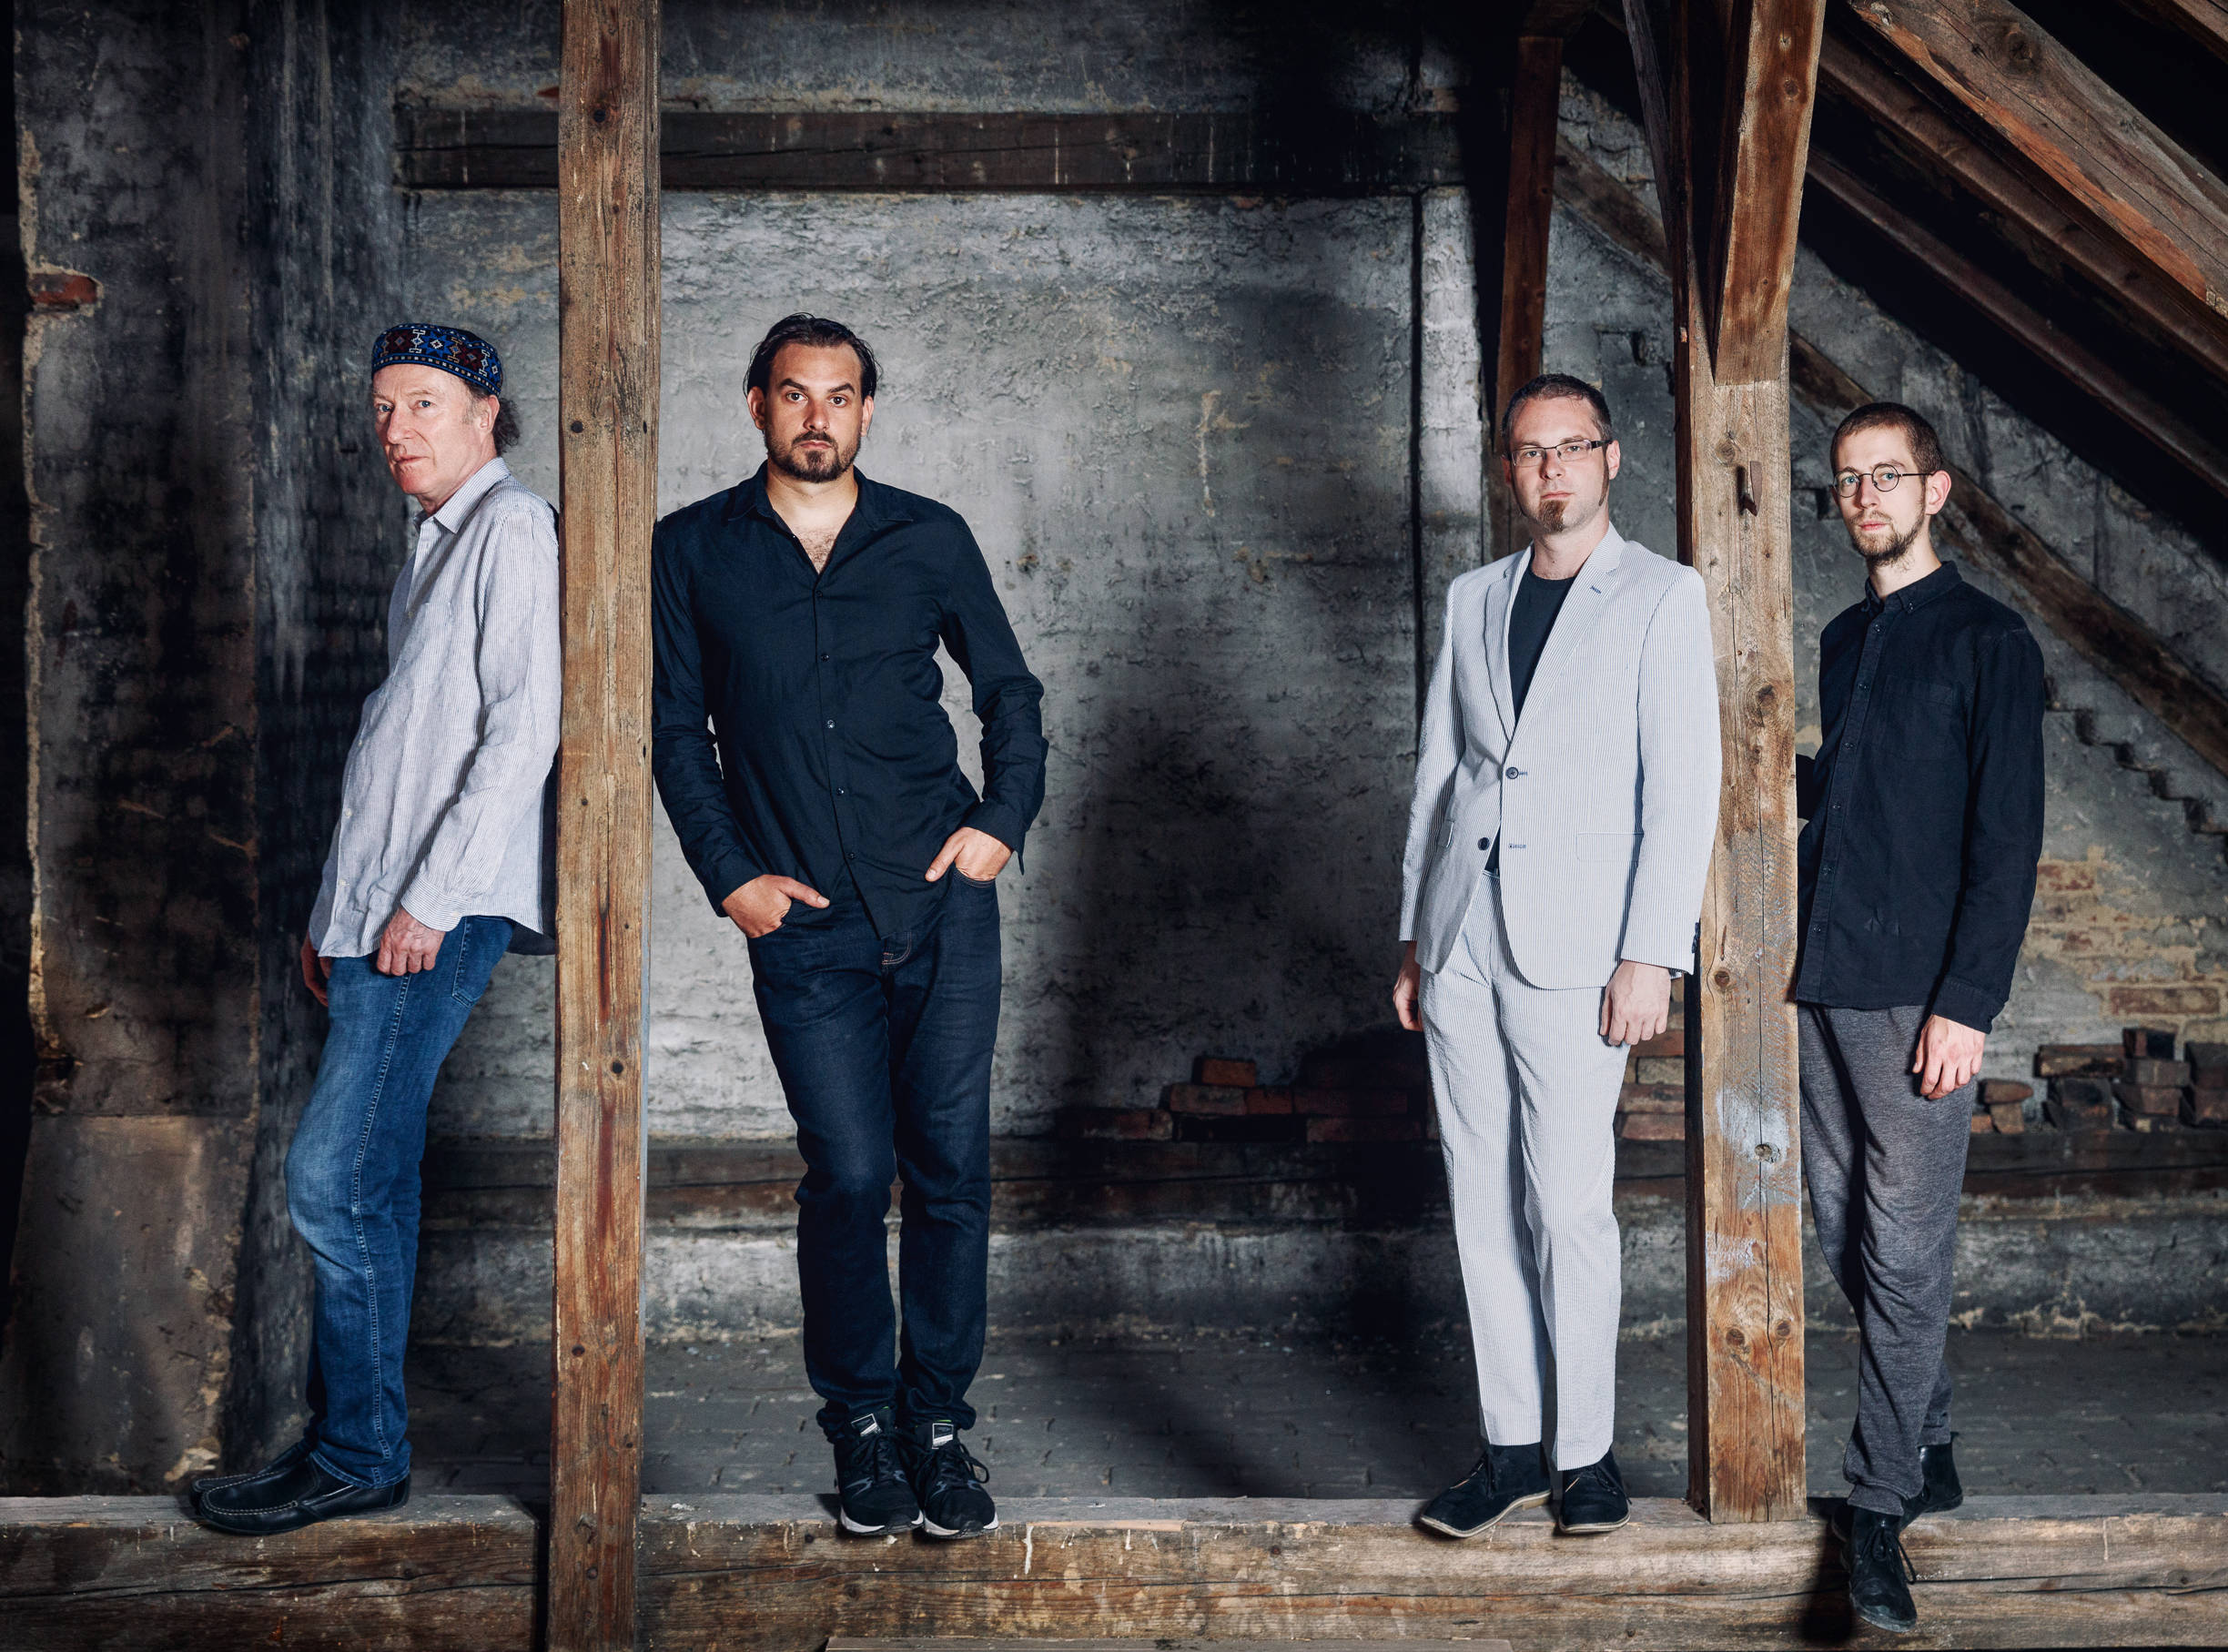 v.l.n.r.: von links nach rechts: Andi Schreiber (Violine), Martin Bayer (Gitarre), Clemens Salesny (Saxofon), Valentin Duit (Schlagzeugt). Fotocredit: Maria Frodl, 2018